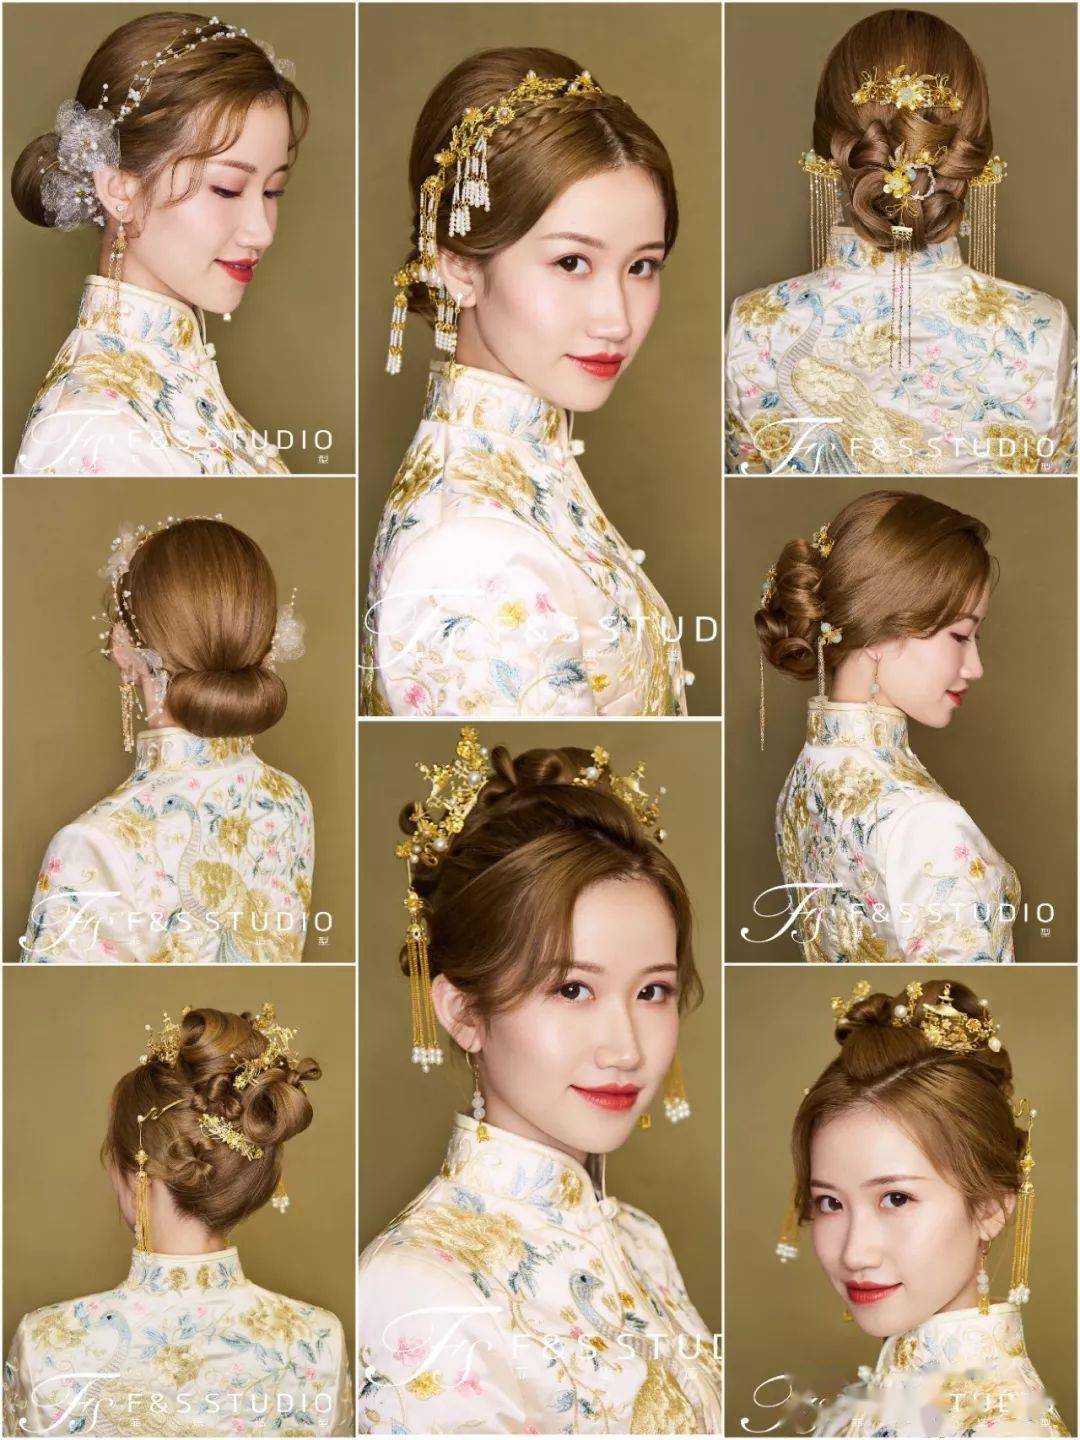 中式结婚头发造型图片-图库-五毛网